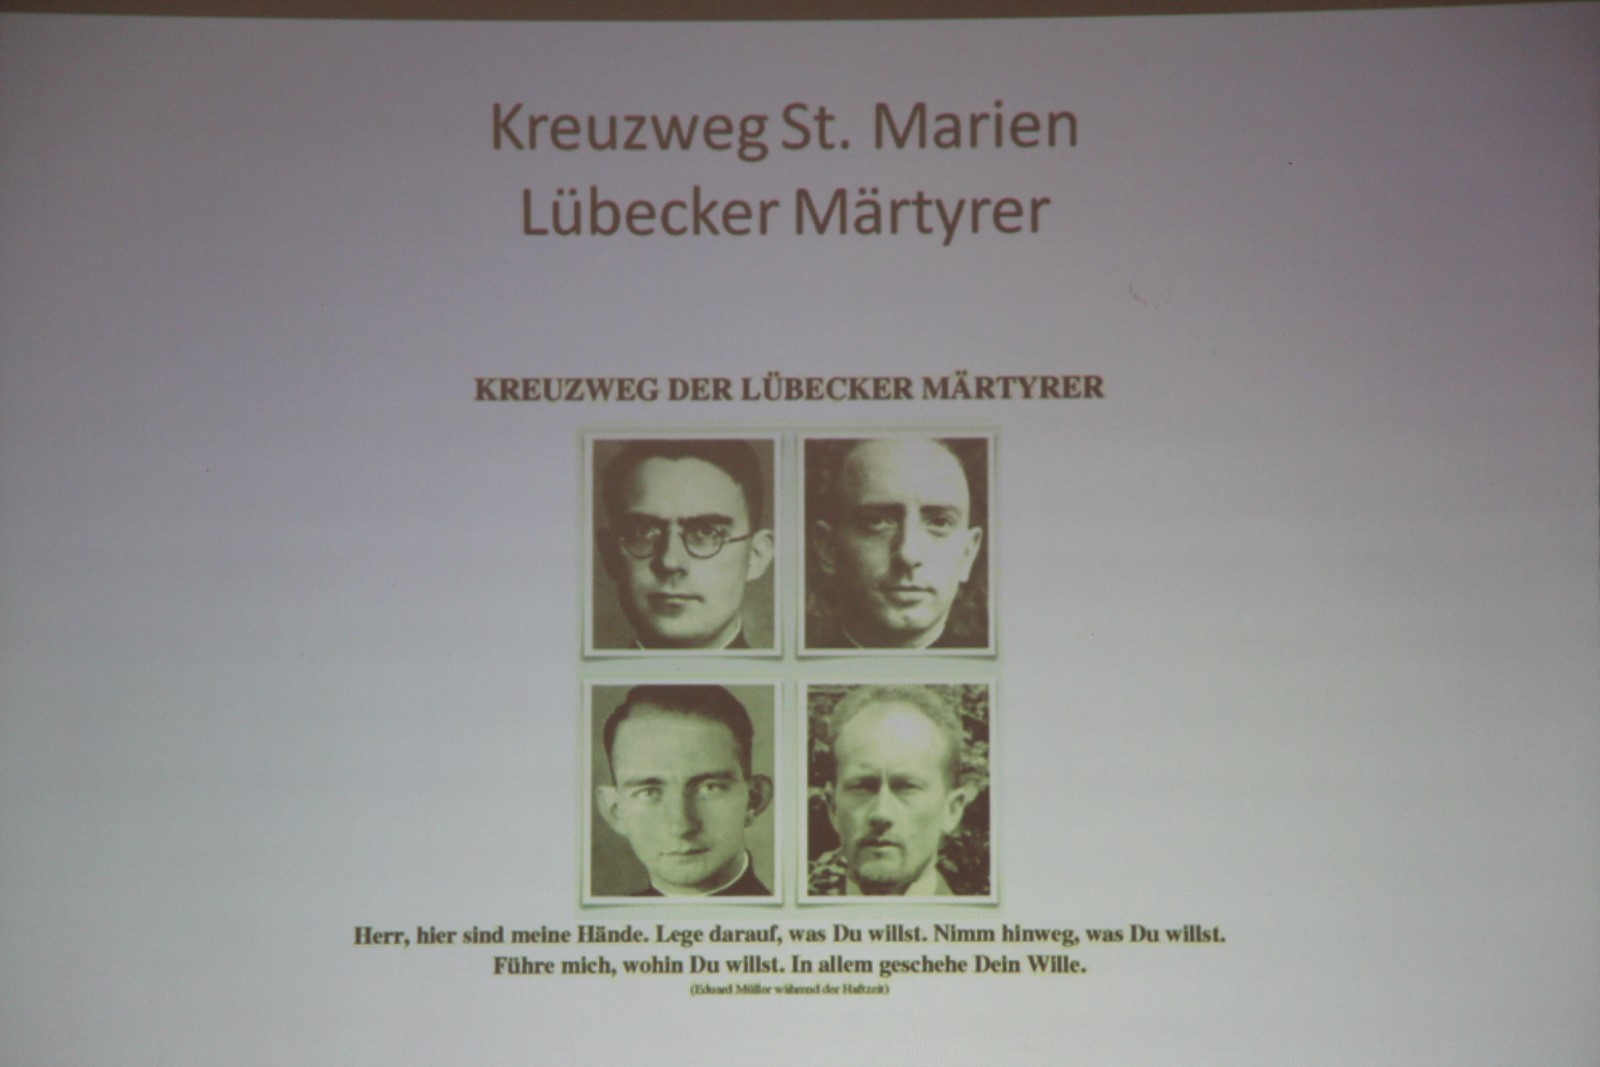 Kreuzweg Lübecker Märtyrer 006 1600x1067